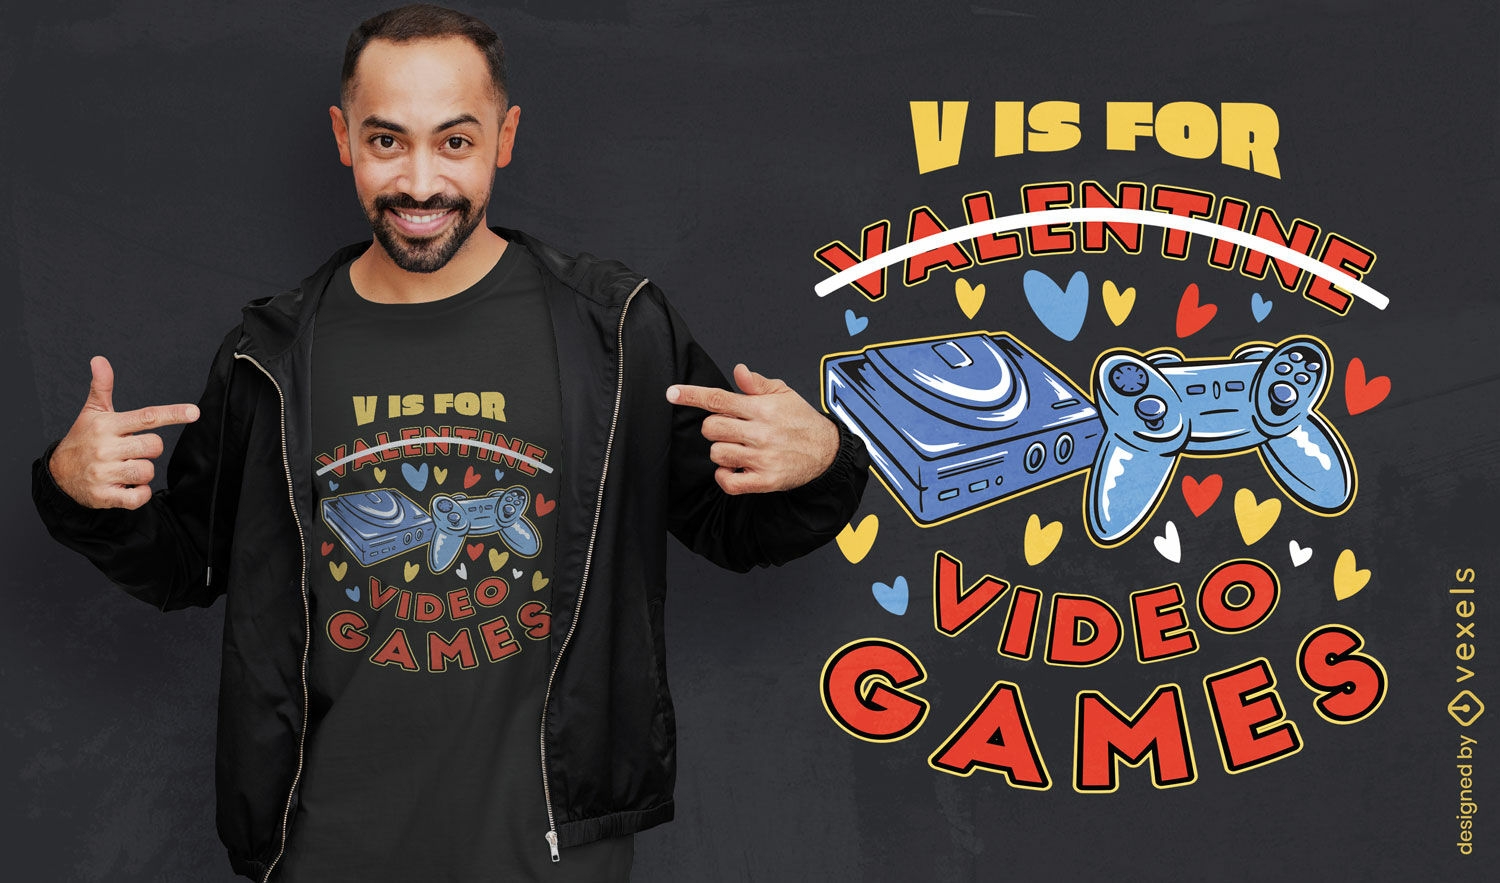 Anti-Valentine-Videospiele-T-Shirt-Design